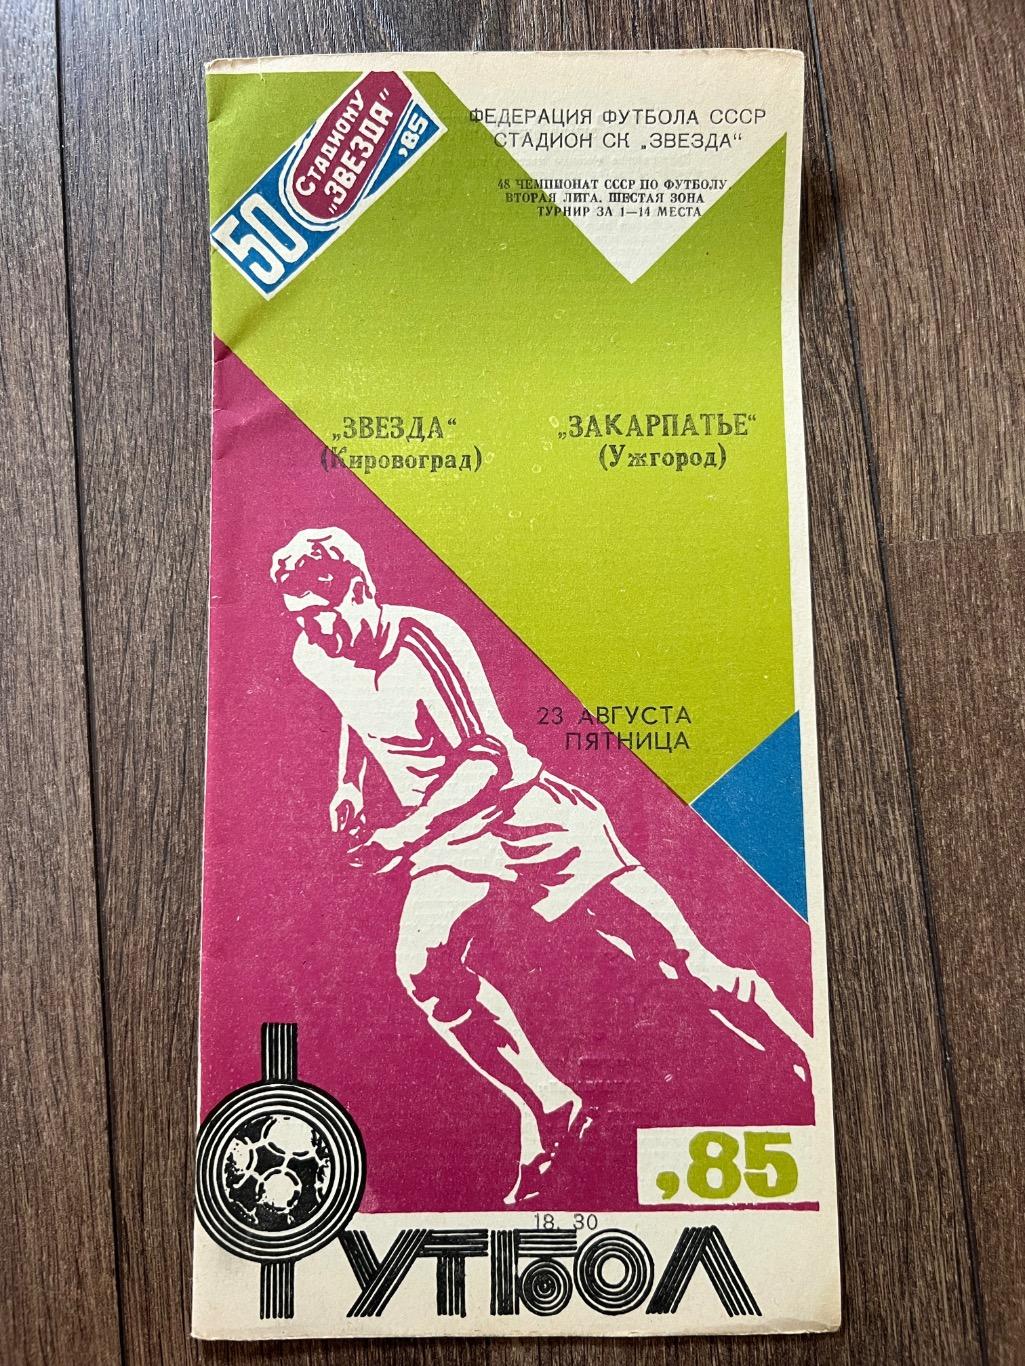 Звезда Кировоград - Закарпатье Ужгород 1985